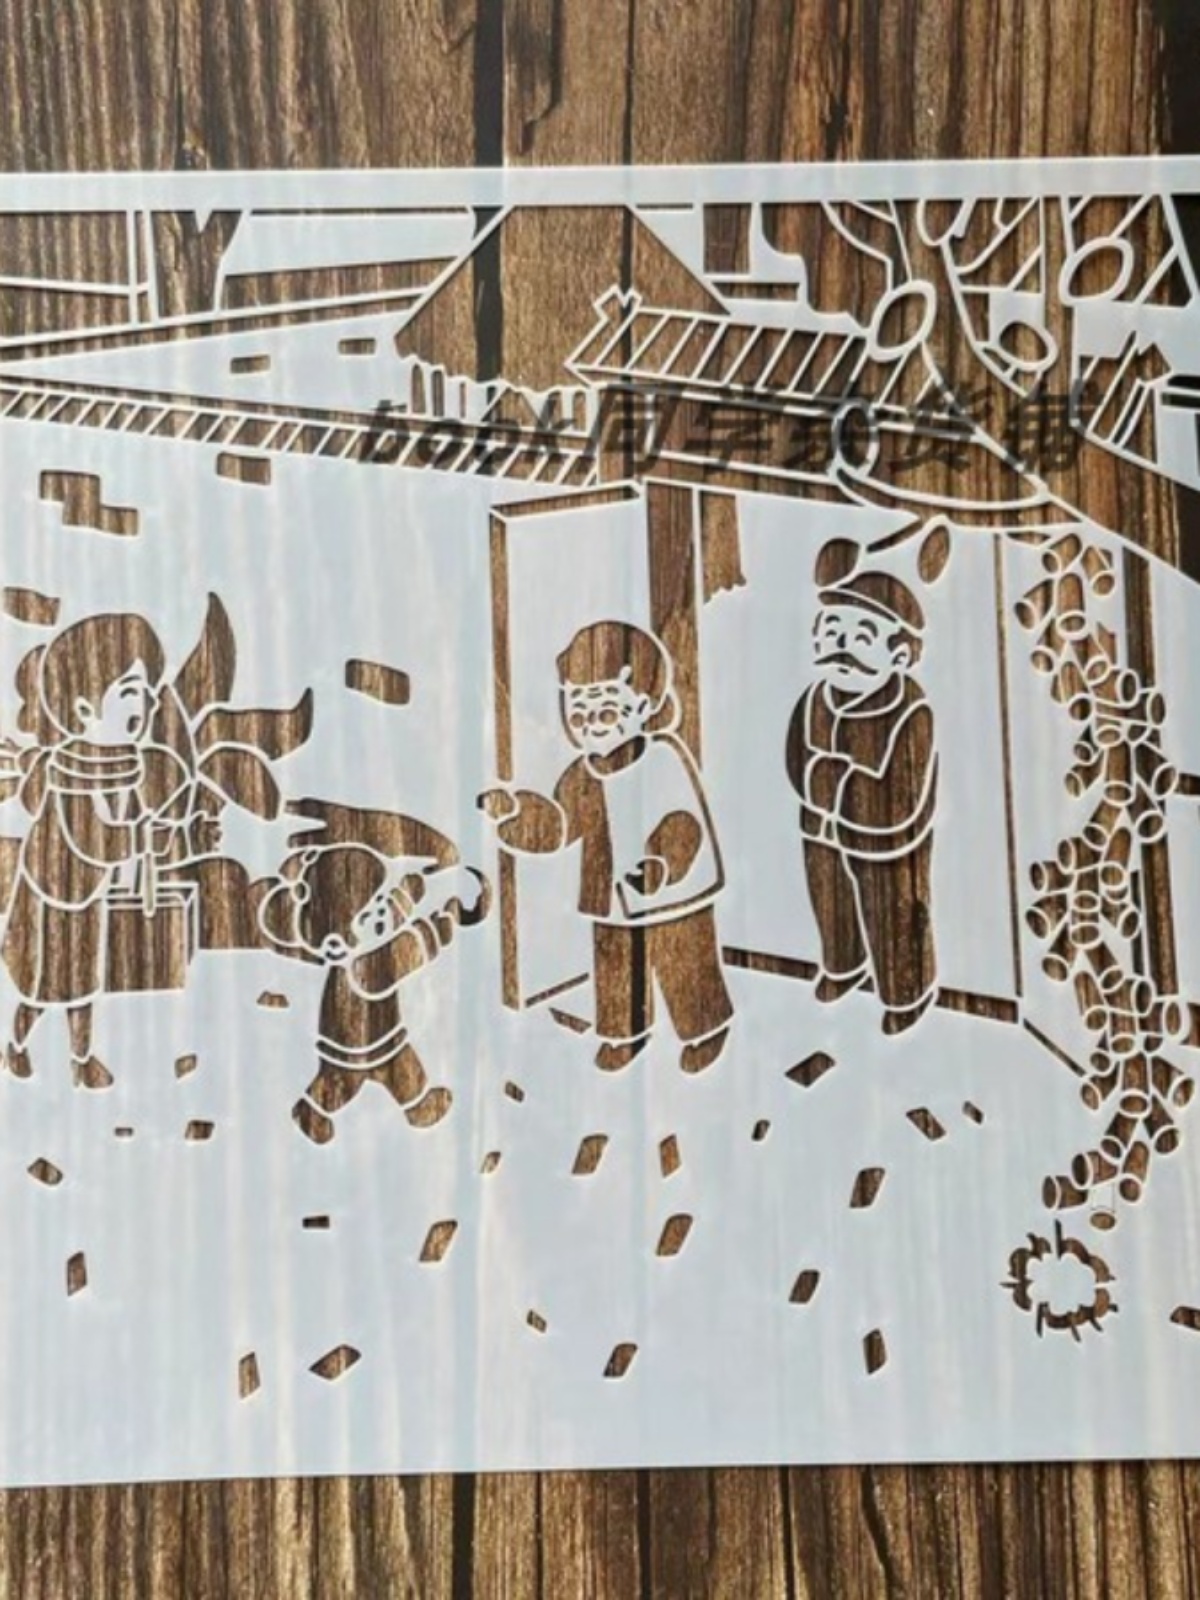 春节主题8K绘画模板镂空卡通绘画边框画板学生益智手抄报镂空模板